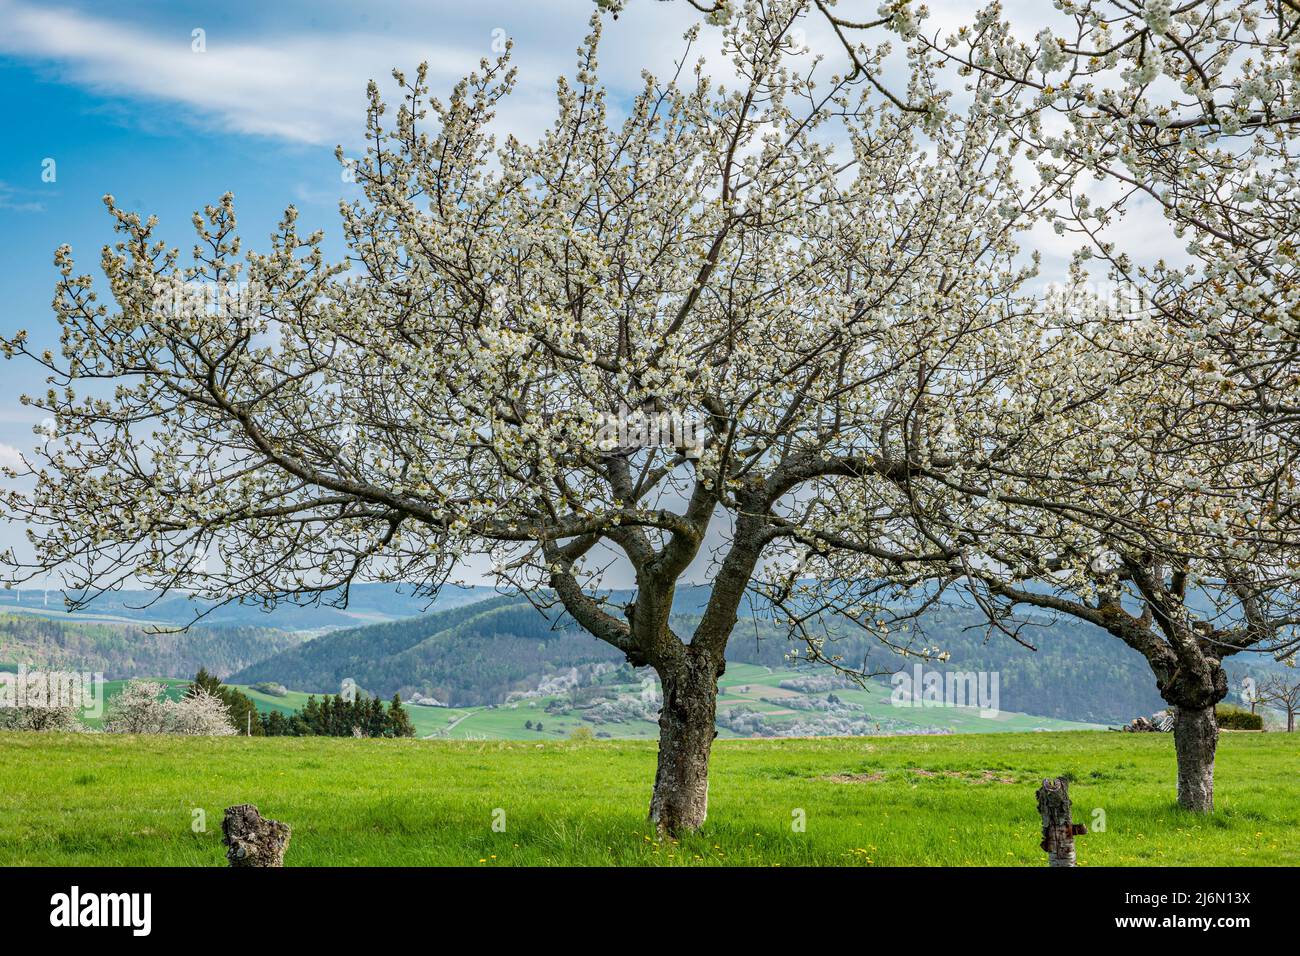 vieux cerisier blanc en fleurs sur fond montagneux et rural Banque D'Images